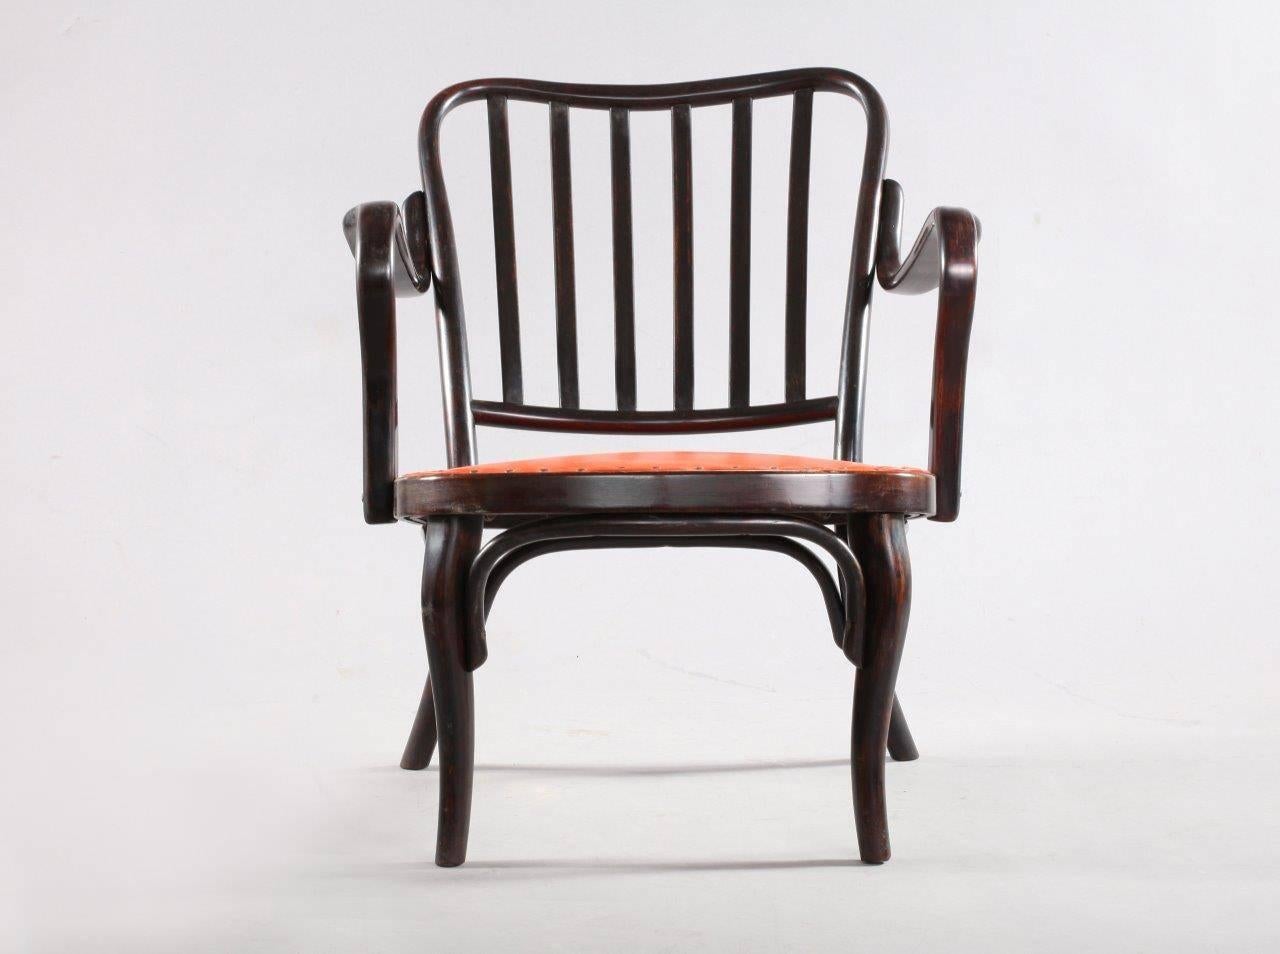 Dieser Sessel A 752 wurde 1930 von Josef Frank entworfen. Hergestellt von Thonet, Wien, 1960. Dunkelbraunes Bugholz, Sitz mit rotem Leder gepolstert.
 